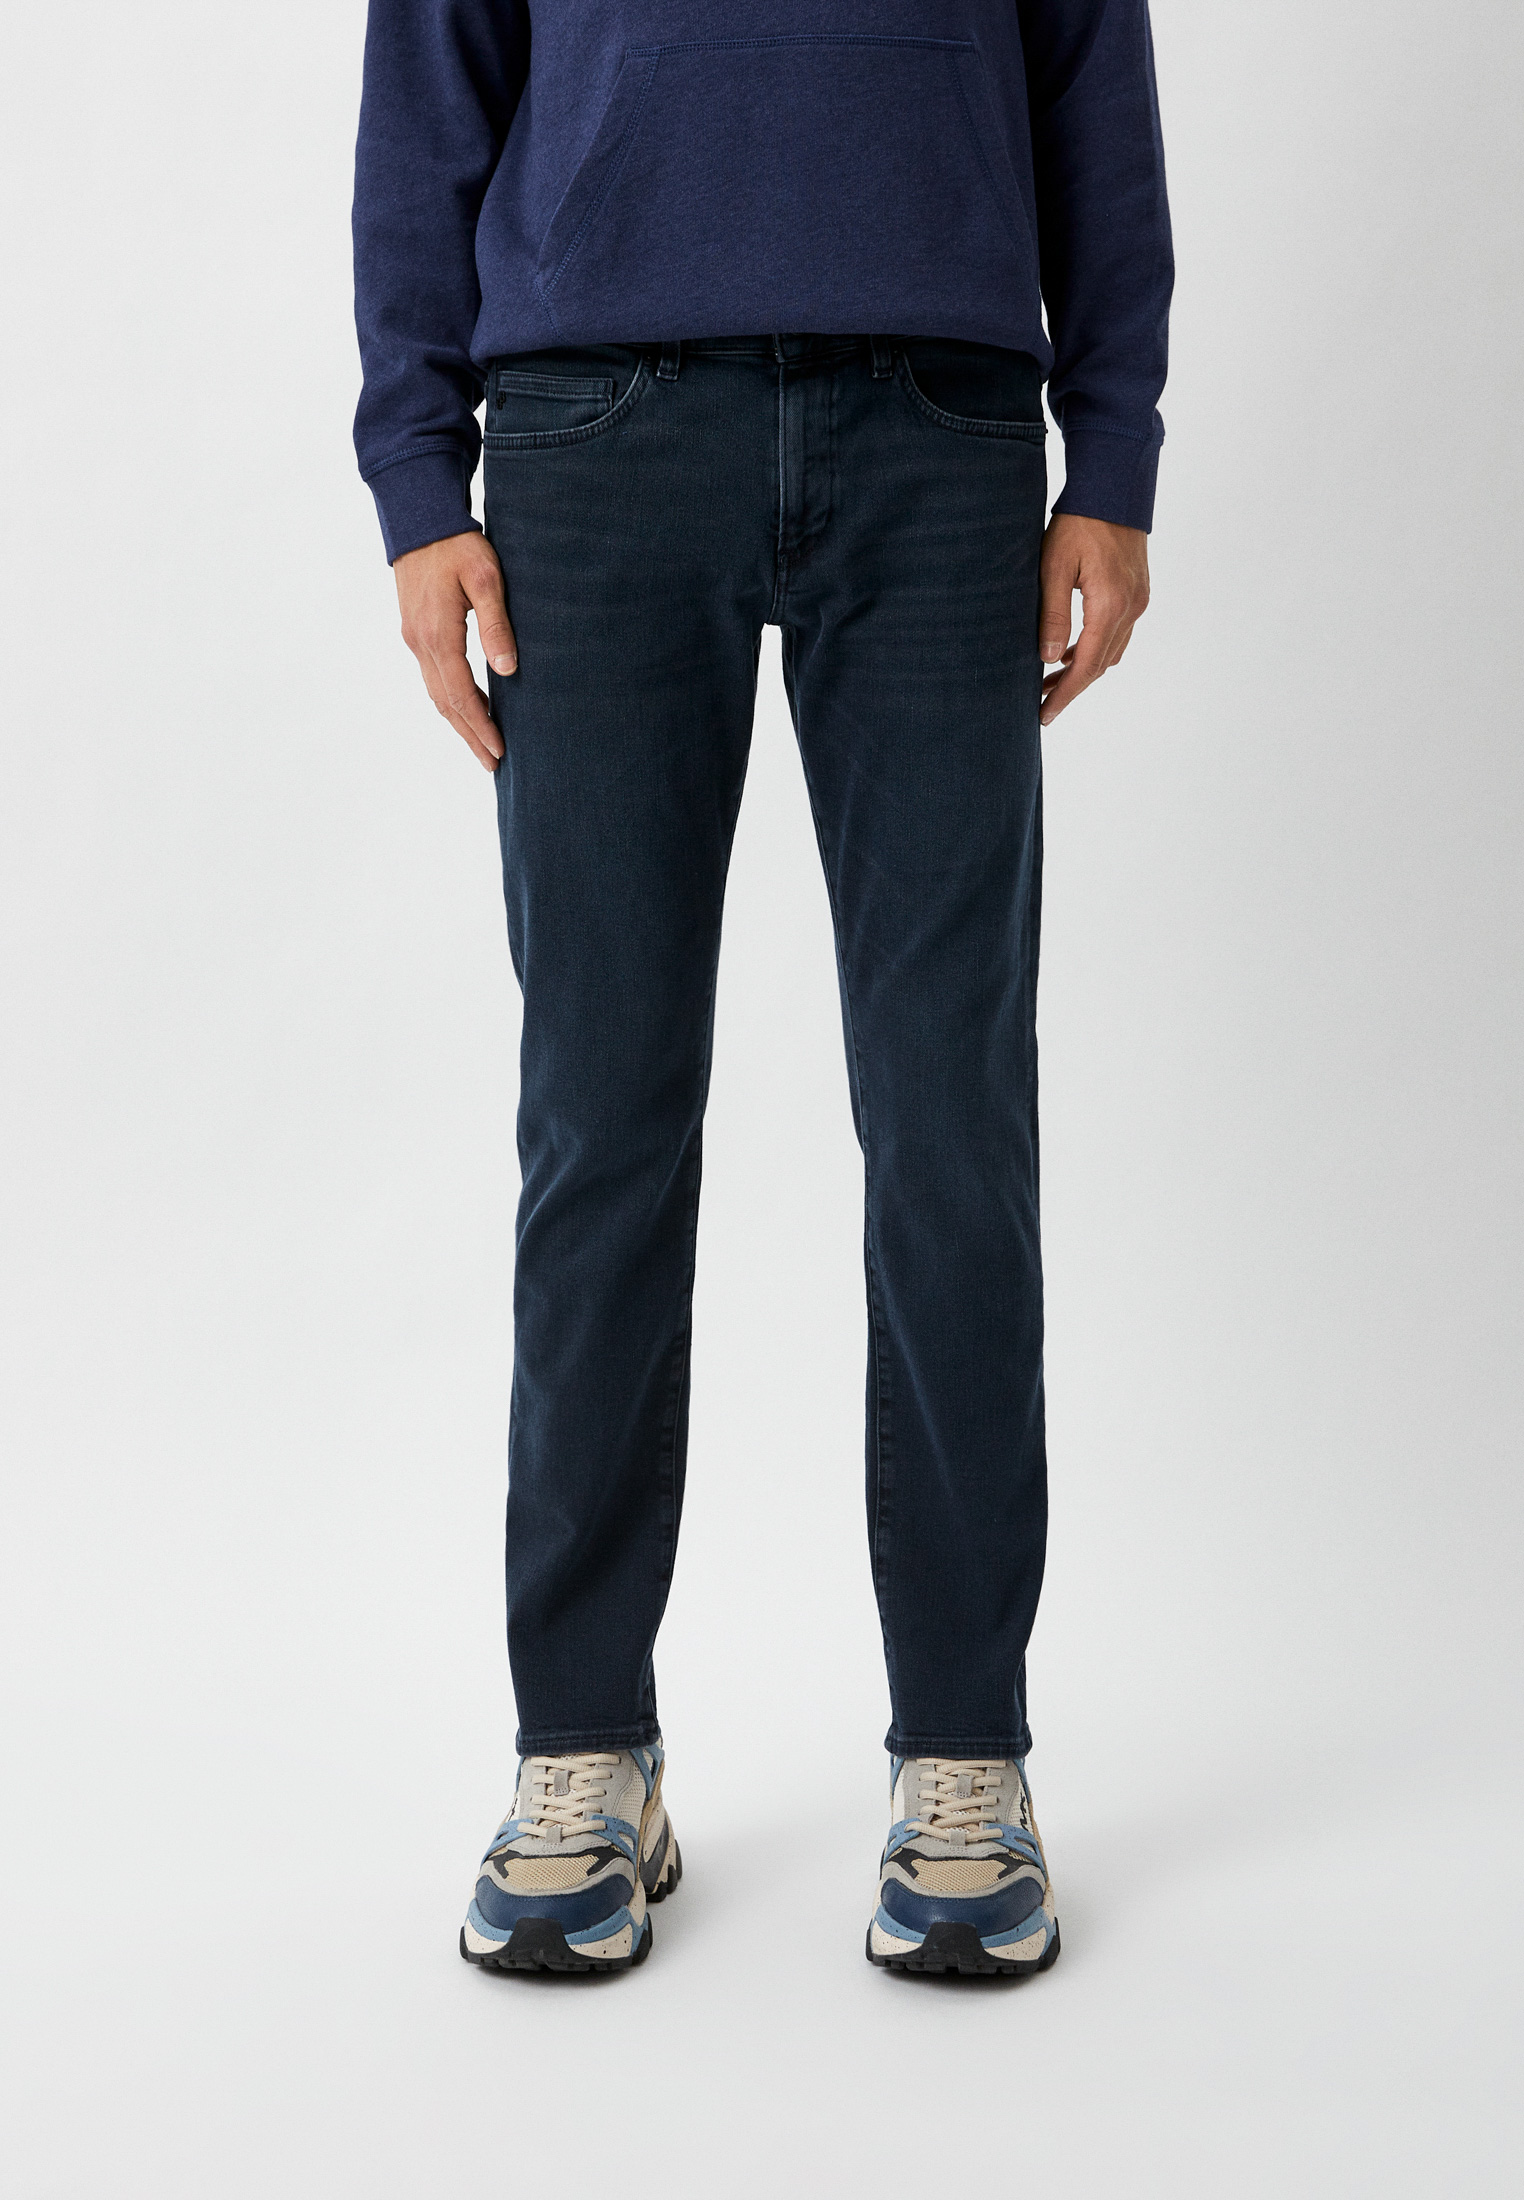 Мужские прямые джинсы Boss (Босс) 50496192: изображение 1